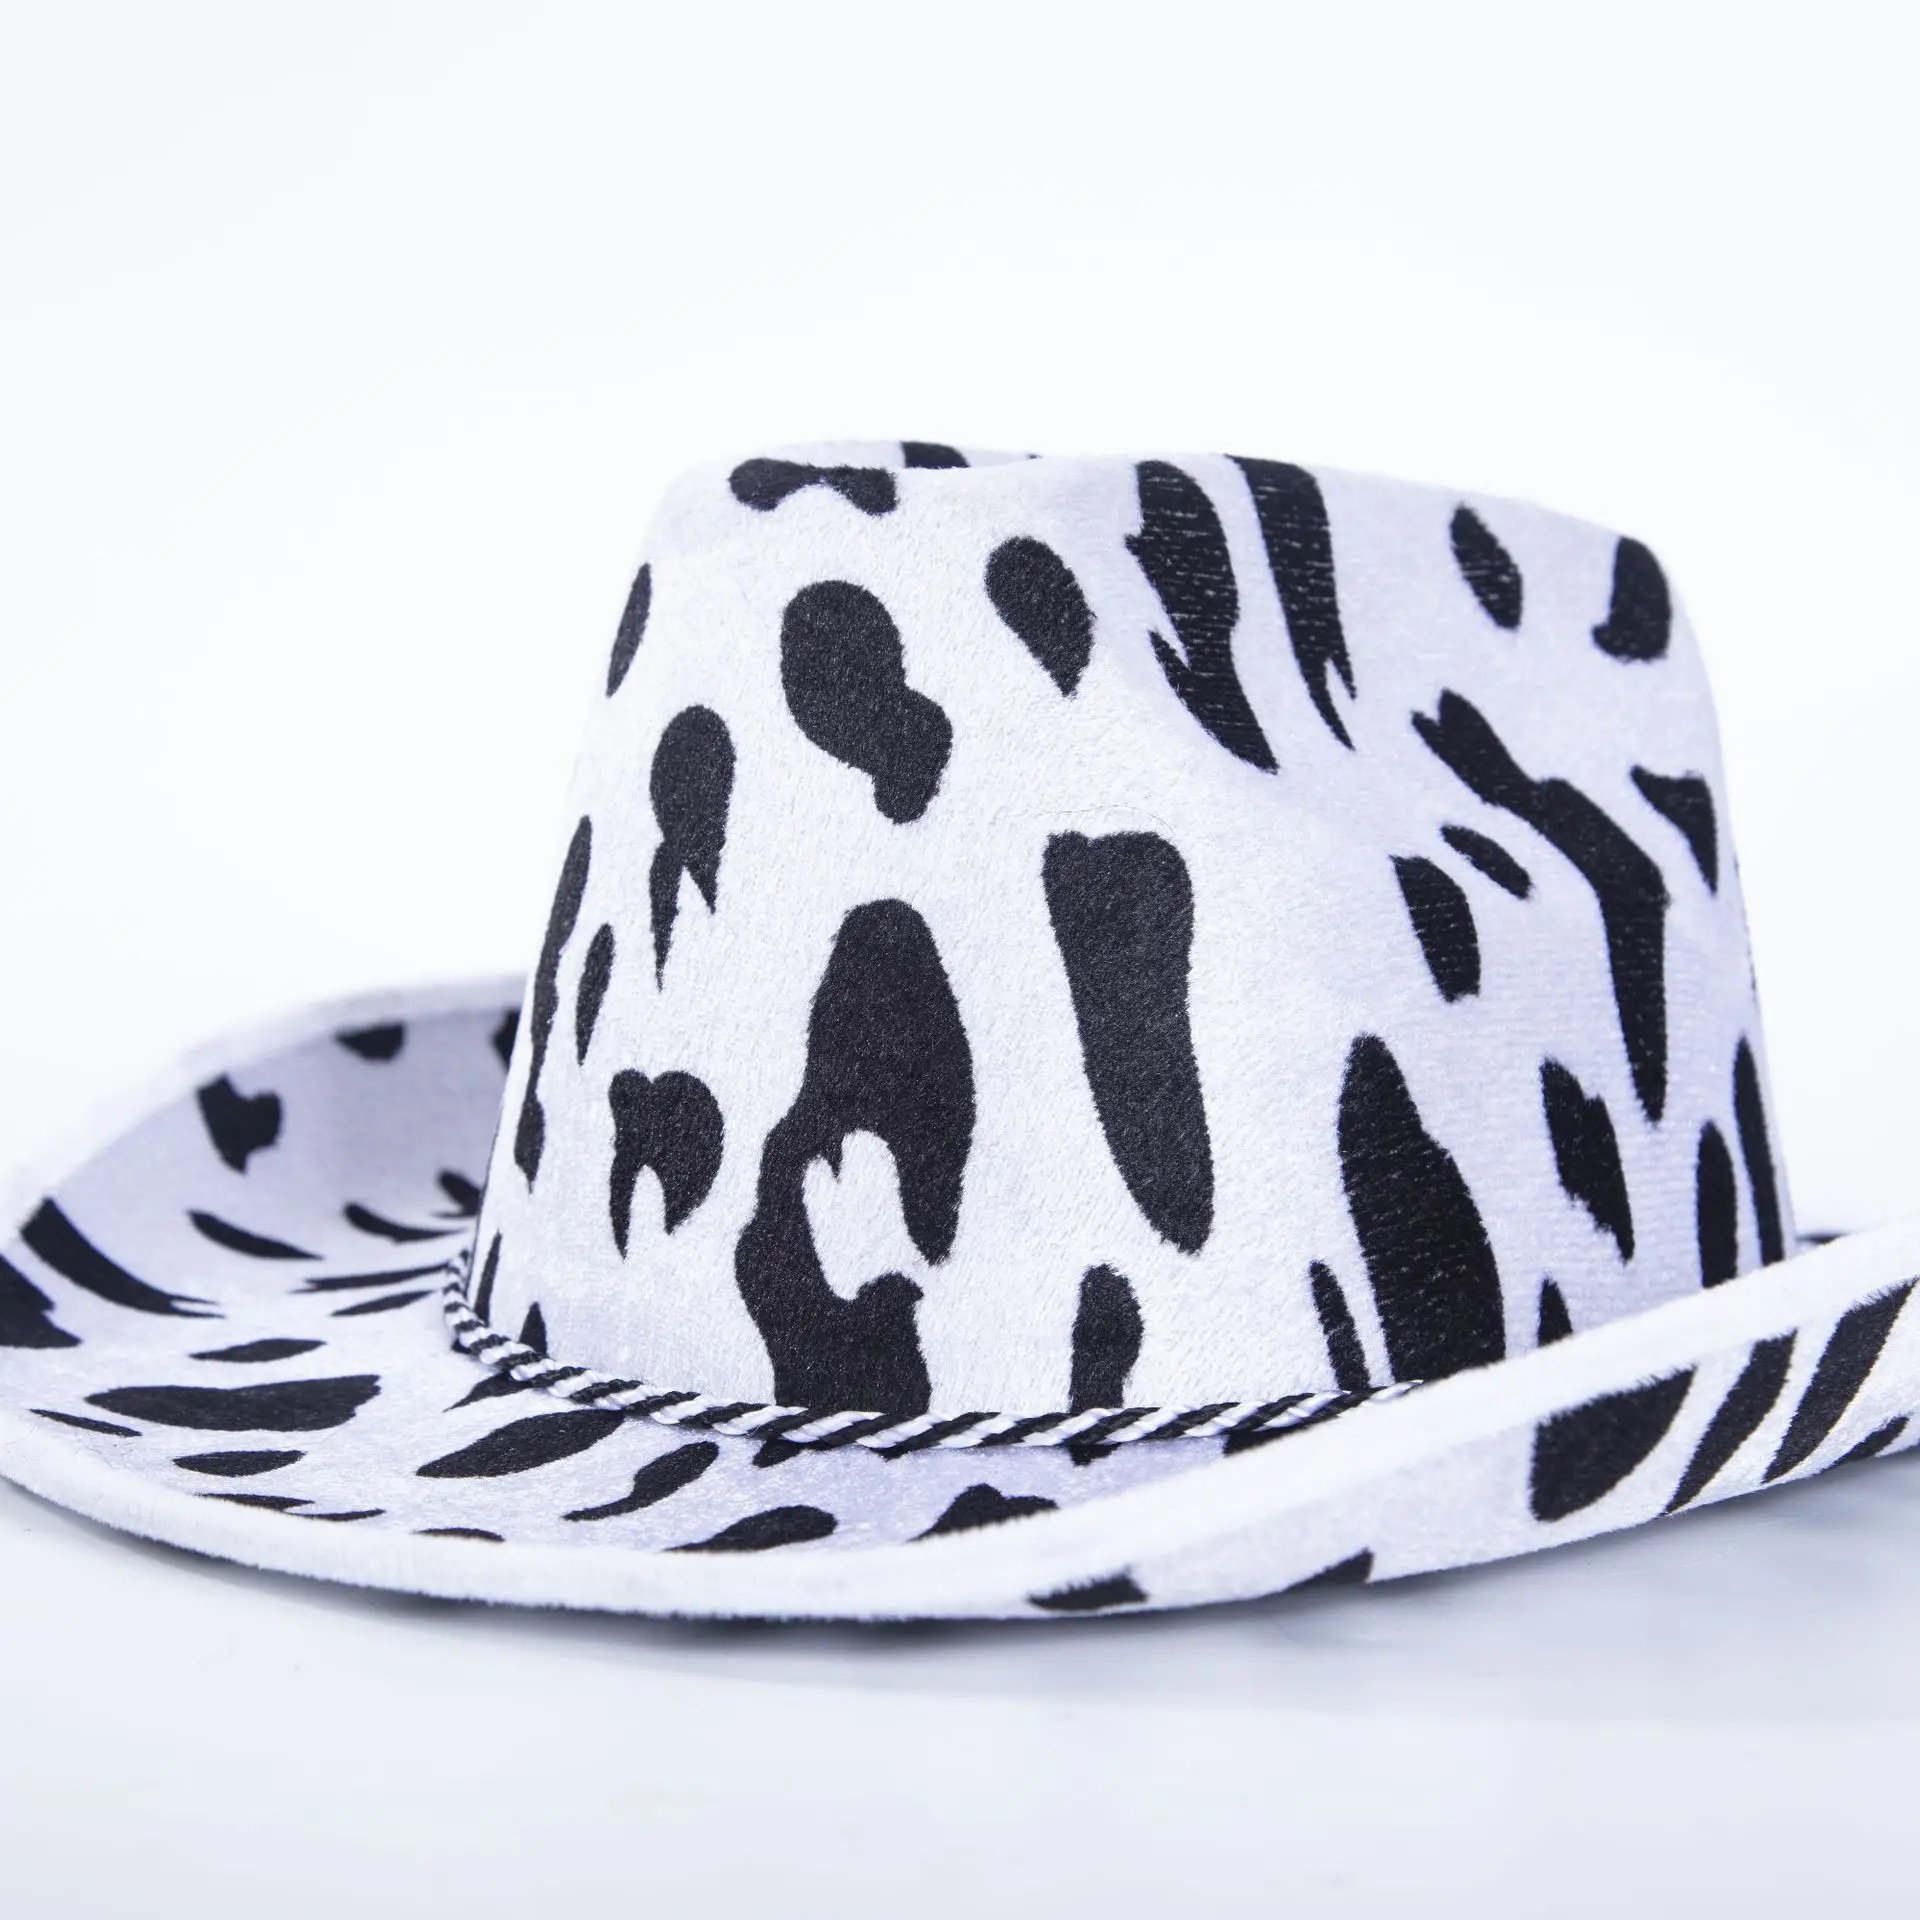 

Большая ковбойская шляпа с коровьим принтом, ковбойская шляпа с коровьим принтом, женская шляпа с большим рисунком, ковбойские шляпы с коровьим принтом, летняя шляпа от солнца, Западная шапка для взрослых